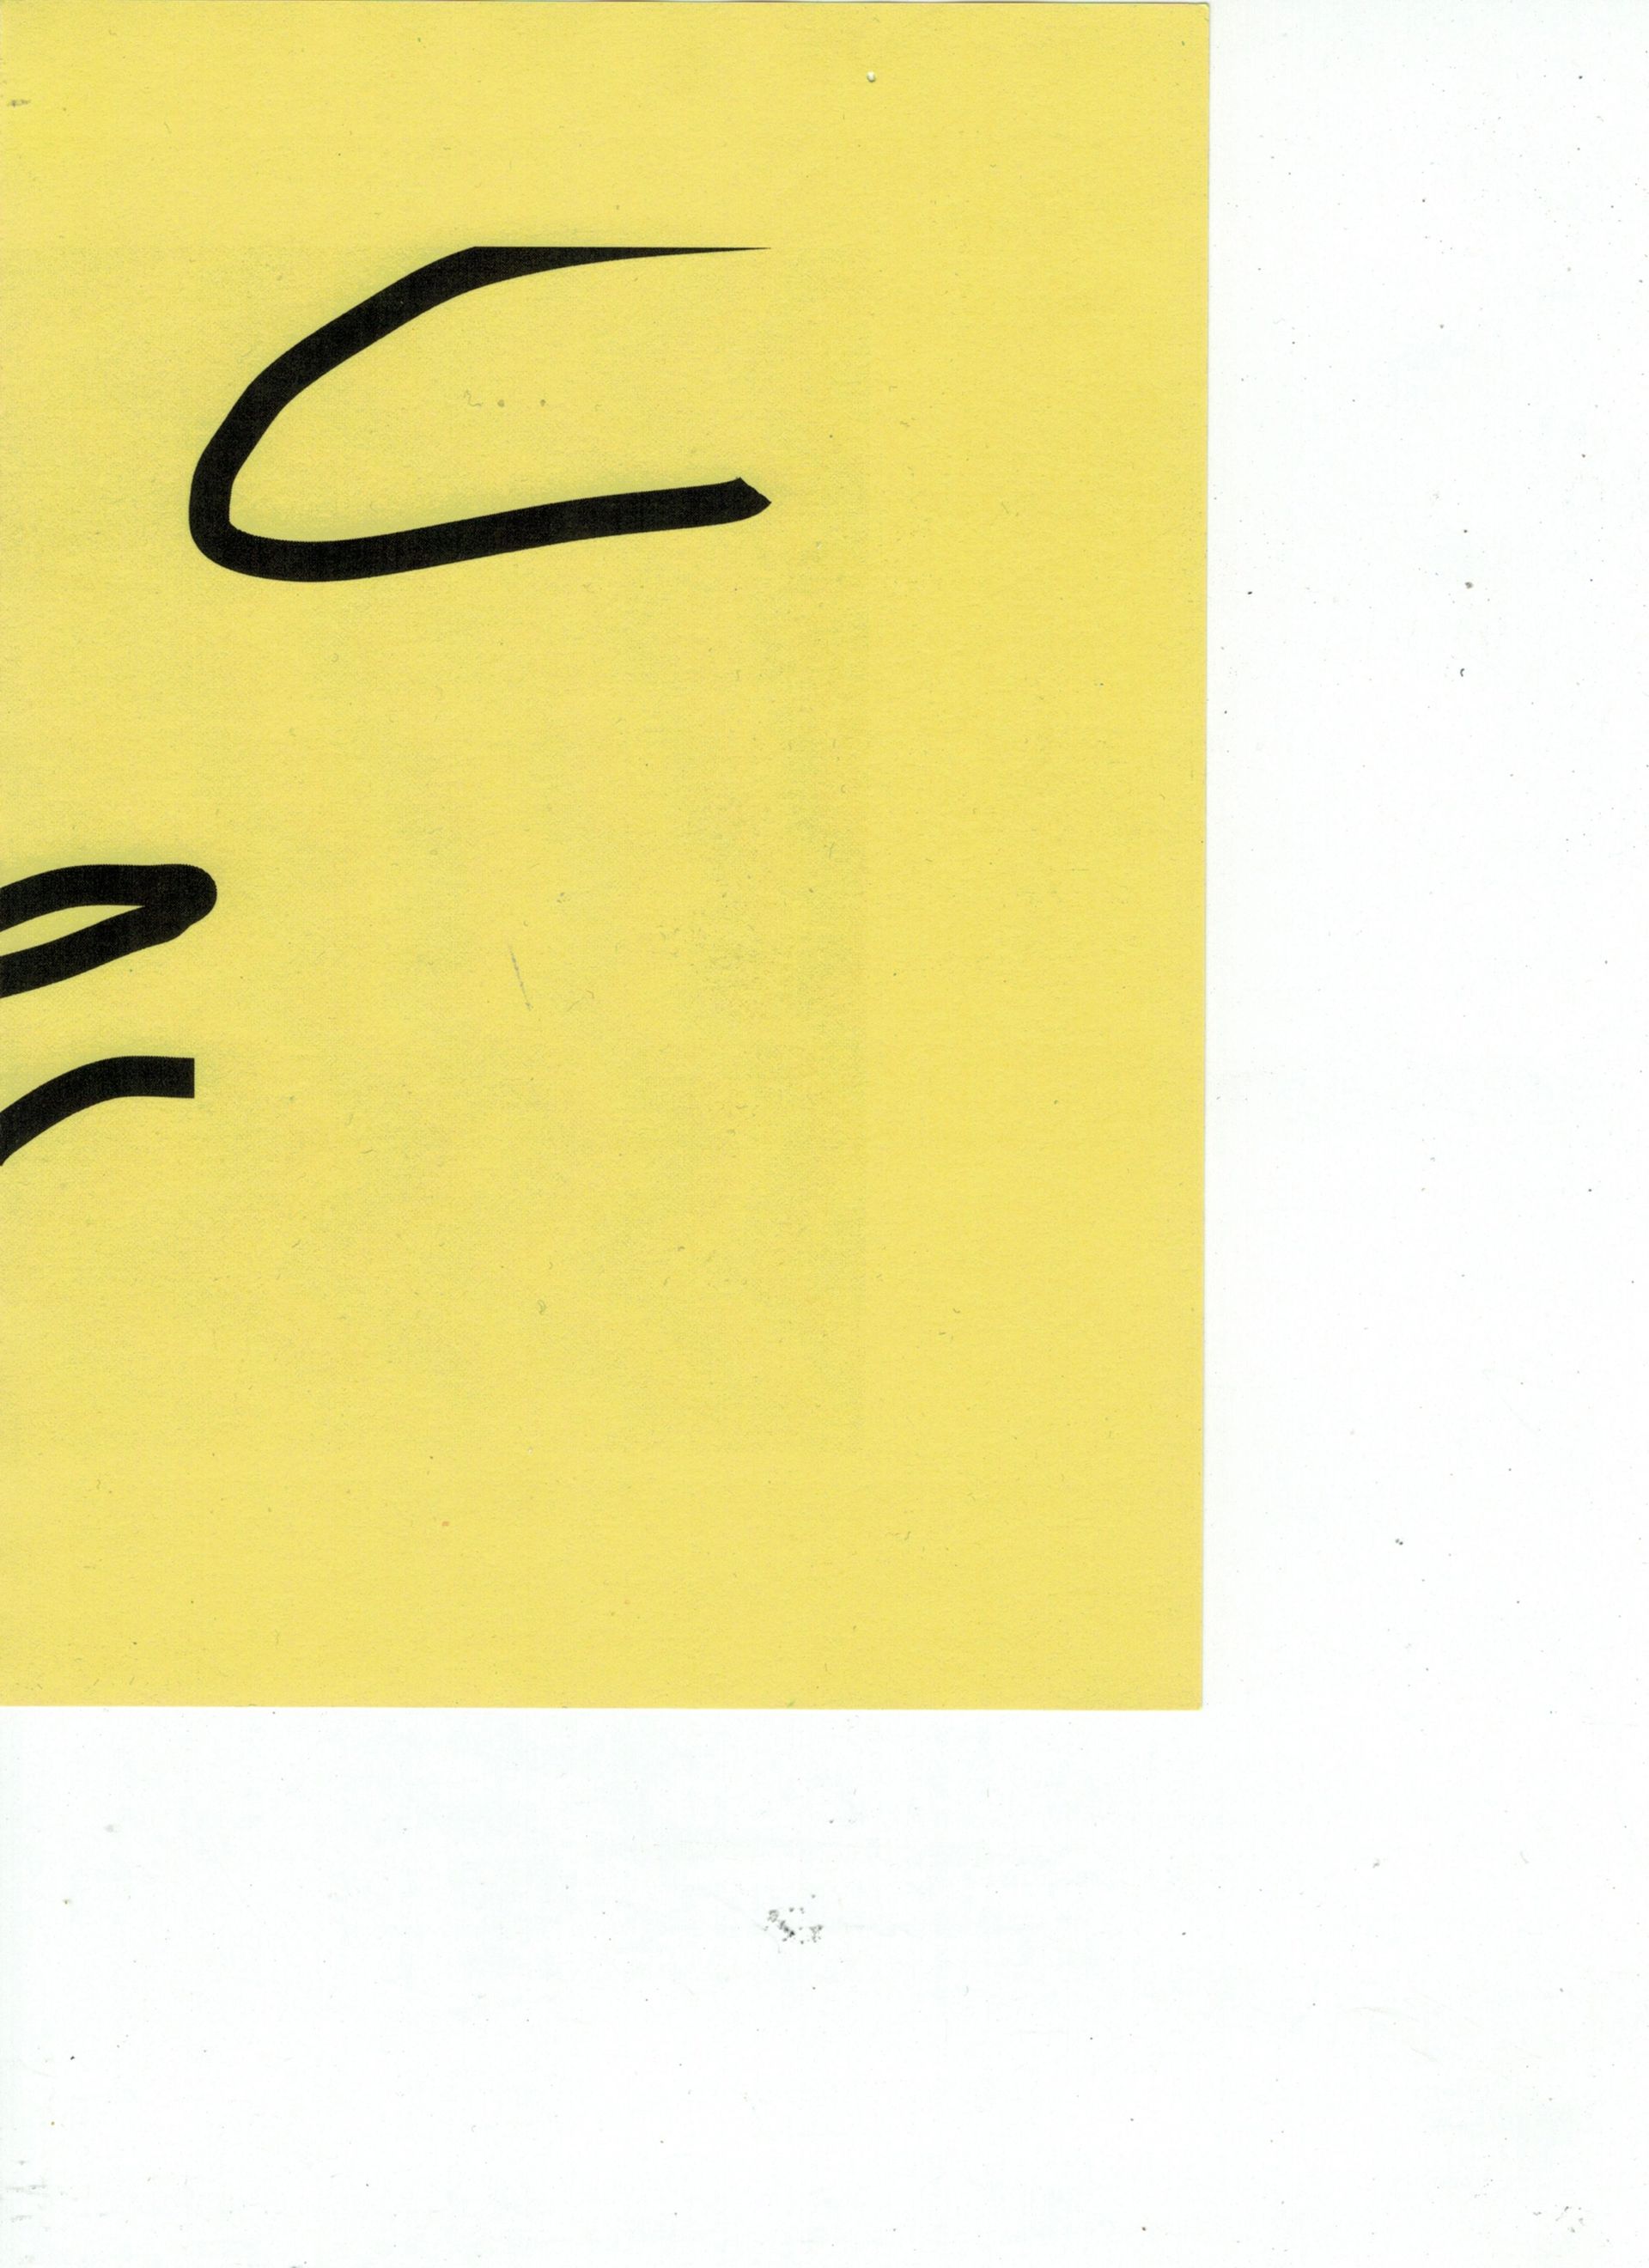 Malte Zenses, Scan von einem gelben Blattpapier, 2021, laser print on paper, 21 × 14,8 cm